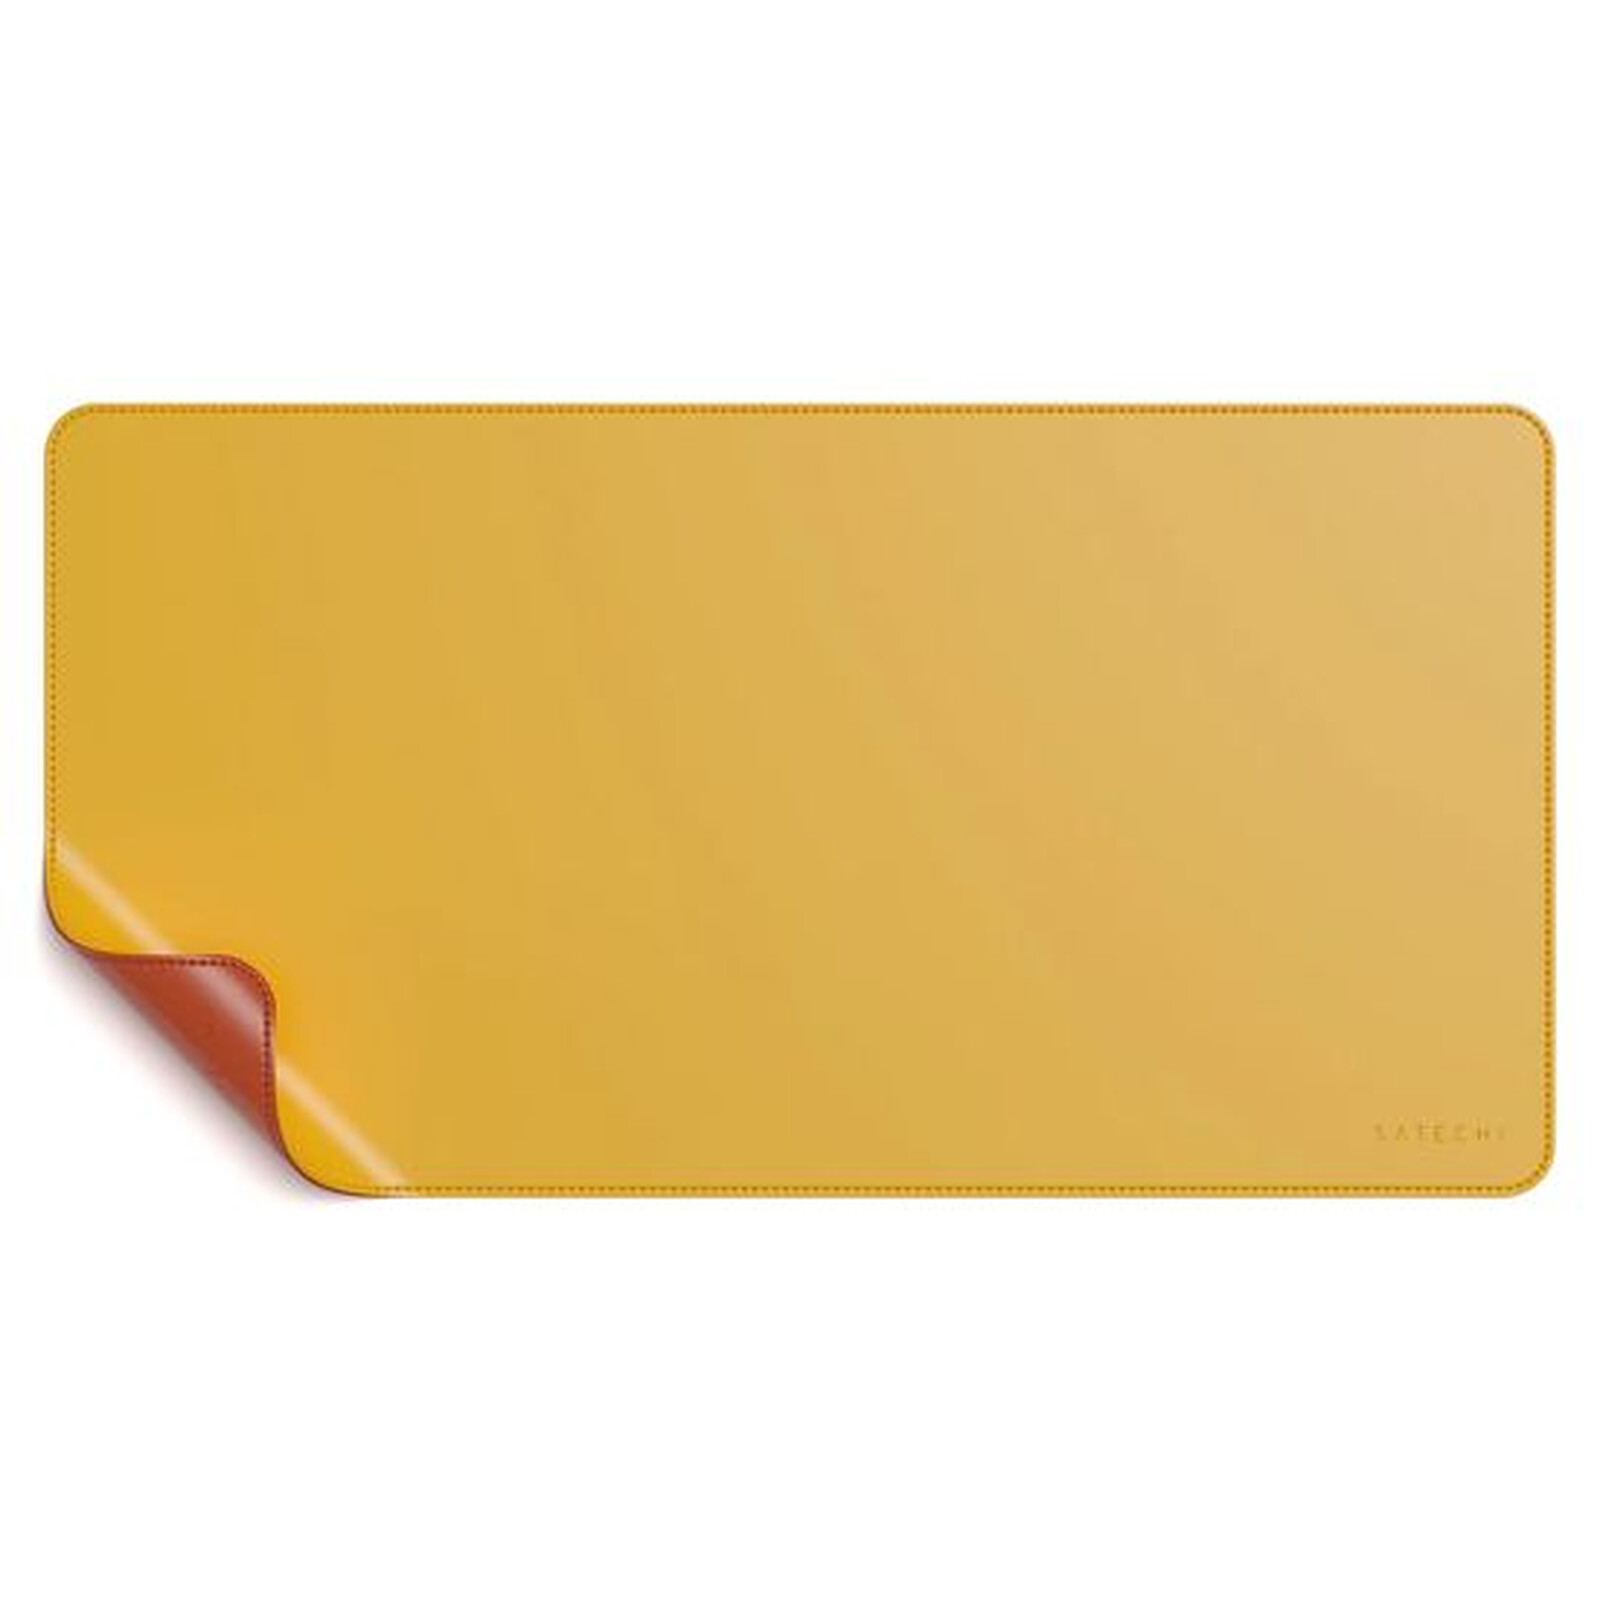 Asus Tapis de souris XXL haute qualité pour PC ,bureau rog-orange